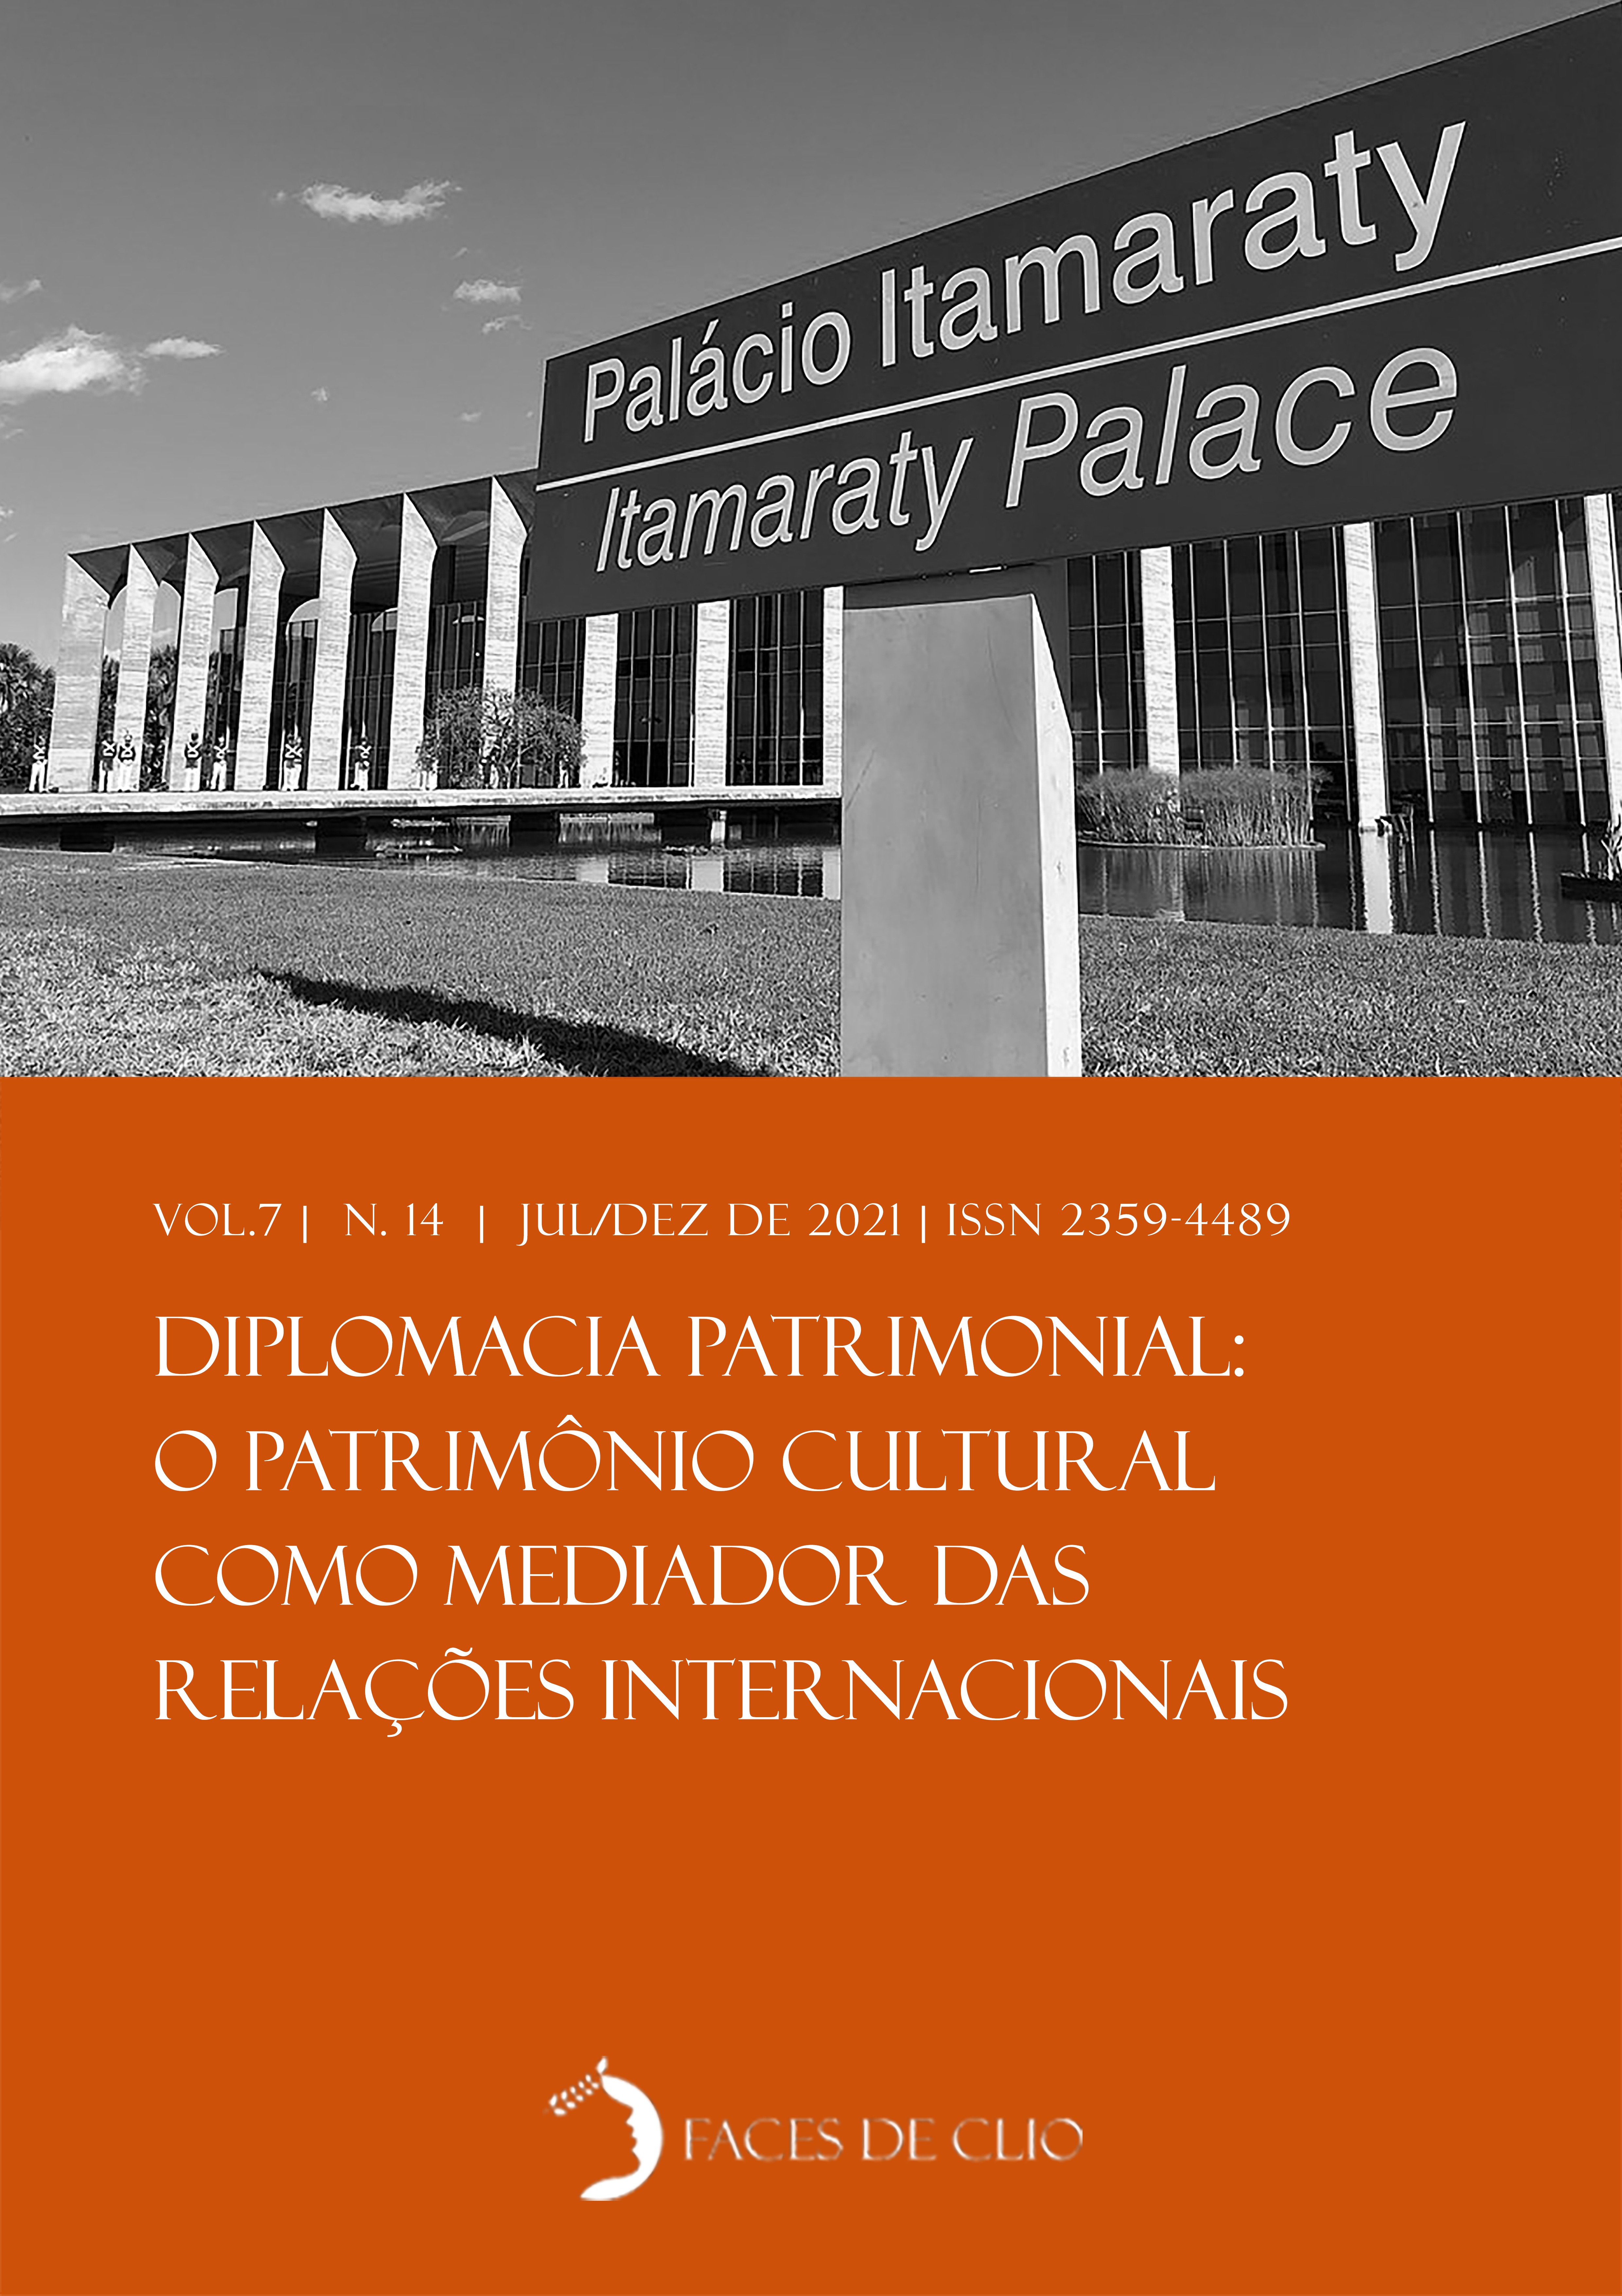 					Visualizar v. 7 n. 14 (2021): Diplomacia Patrimonial: o patrimônio como mediador das relações internacionais
				